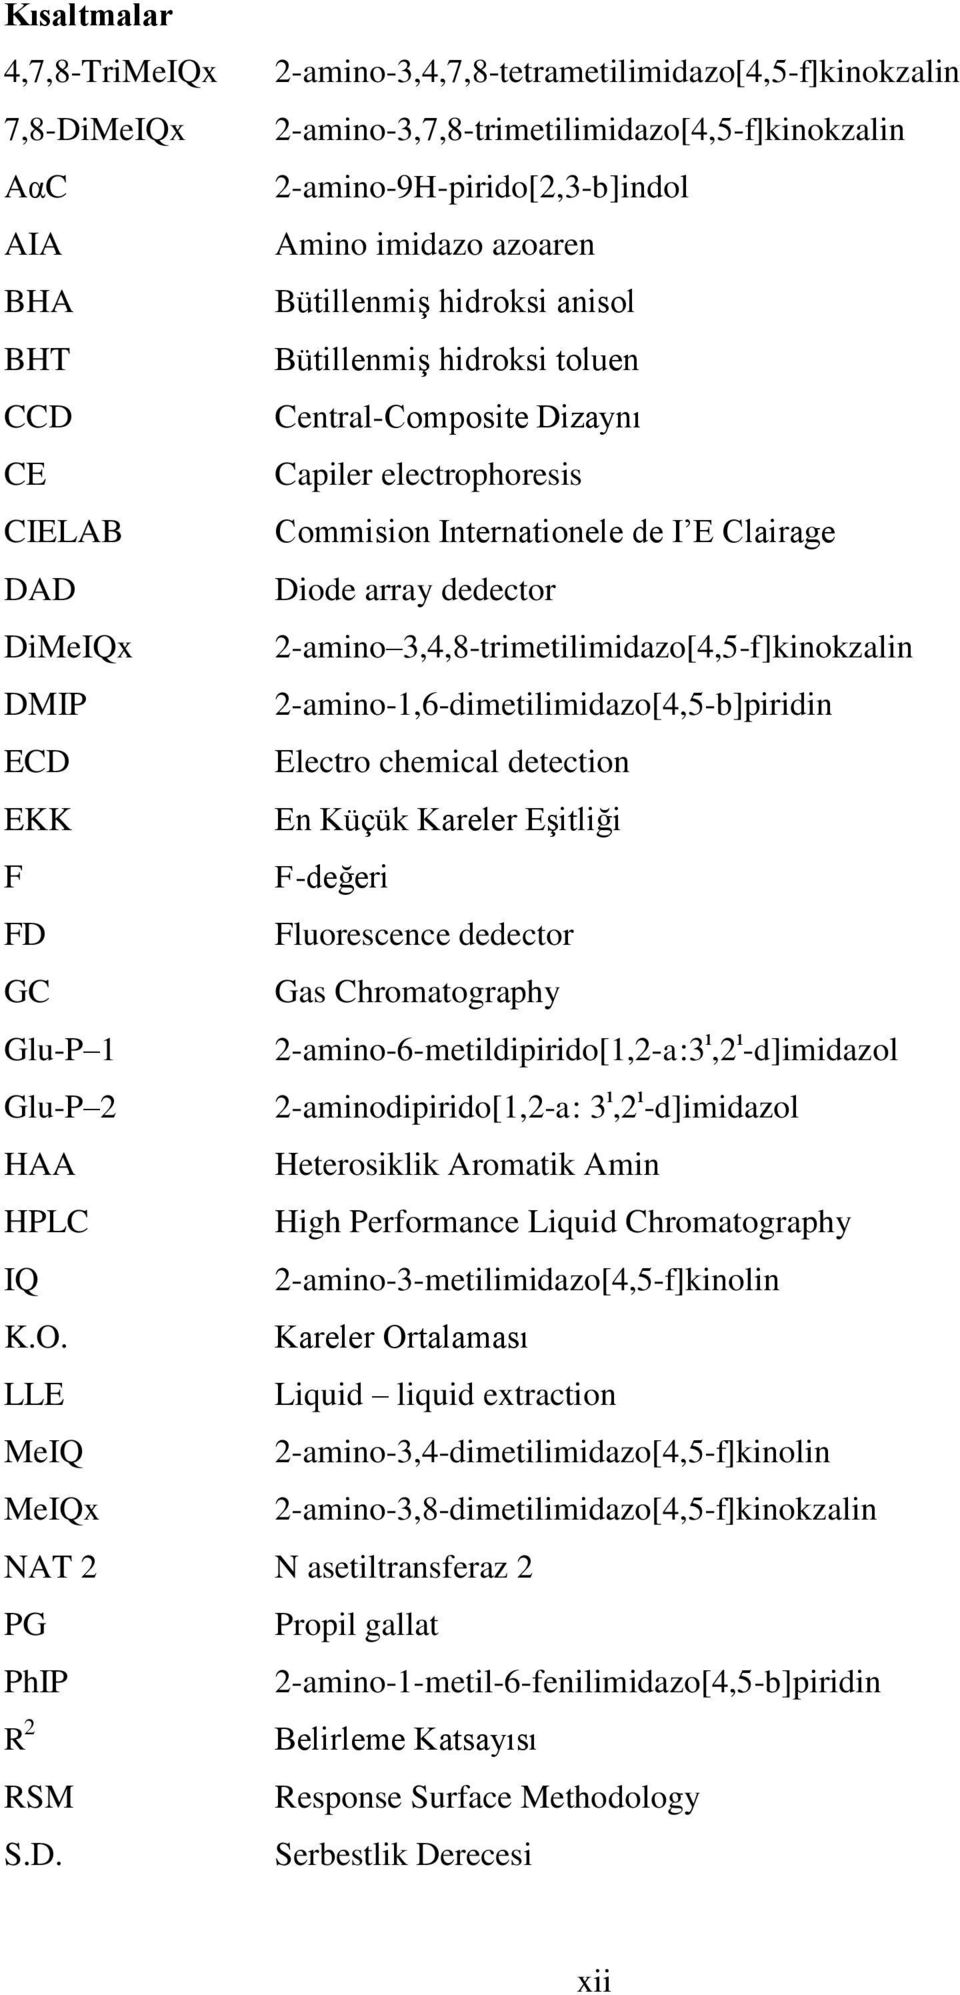 -amino 3,4,8-trimetilimidazo[4,5-f]kinokzalin DMIP -amino-1,6-dimetilimidazo[4,5-b]piridin ECD Electro chemical detection EKK En Küçük Kareler Eşitliği F F-değeri FD Fluorescence dedector GC Gas